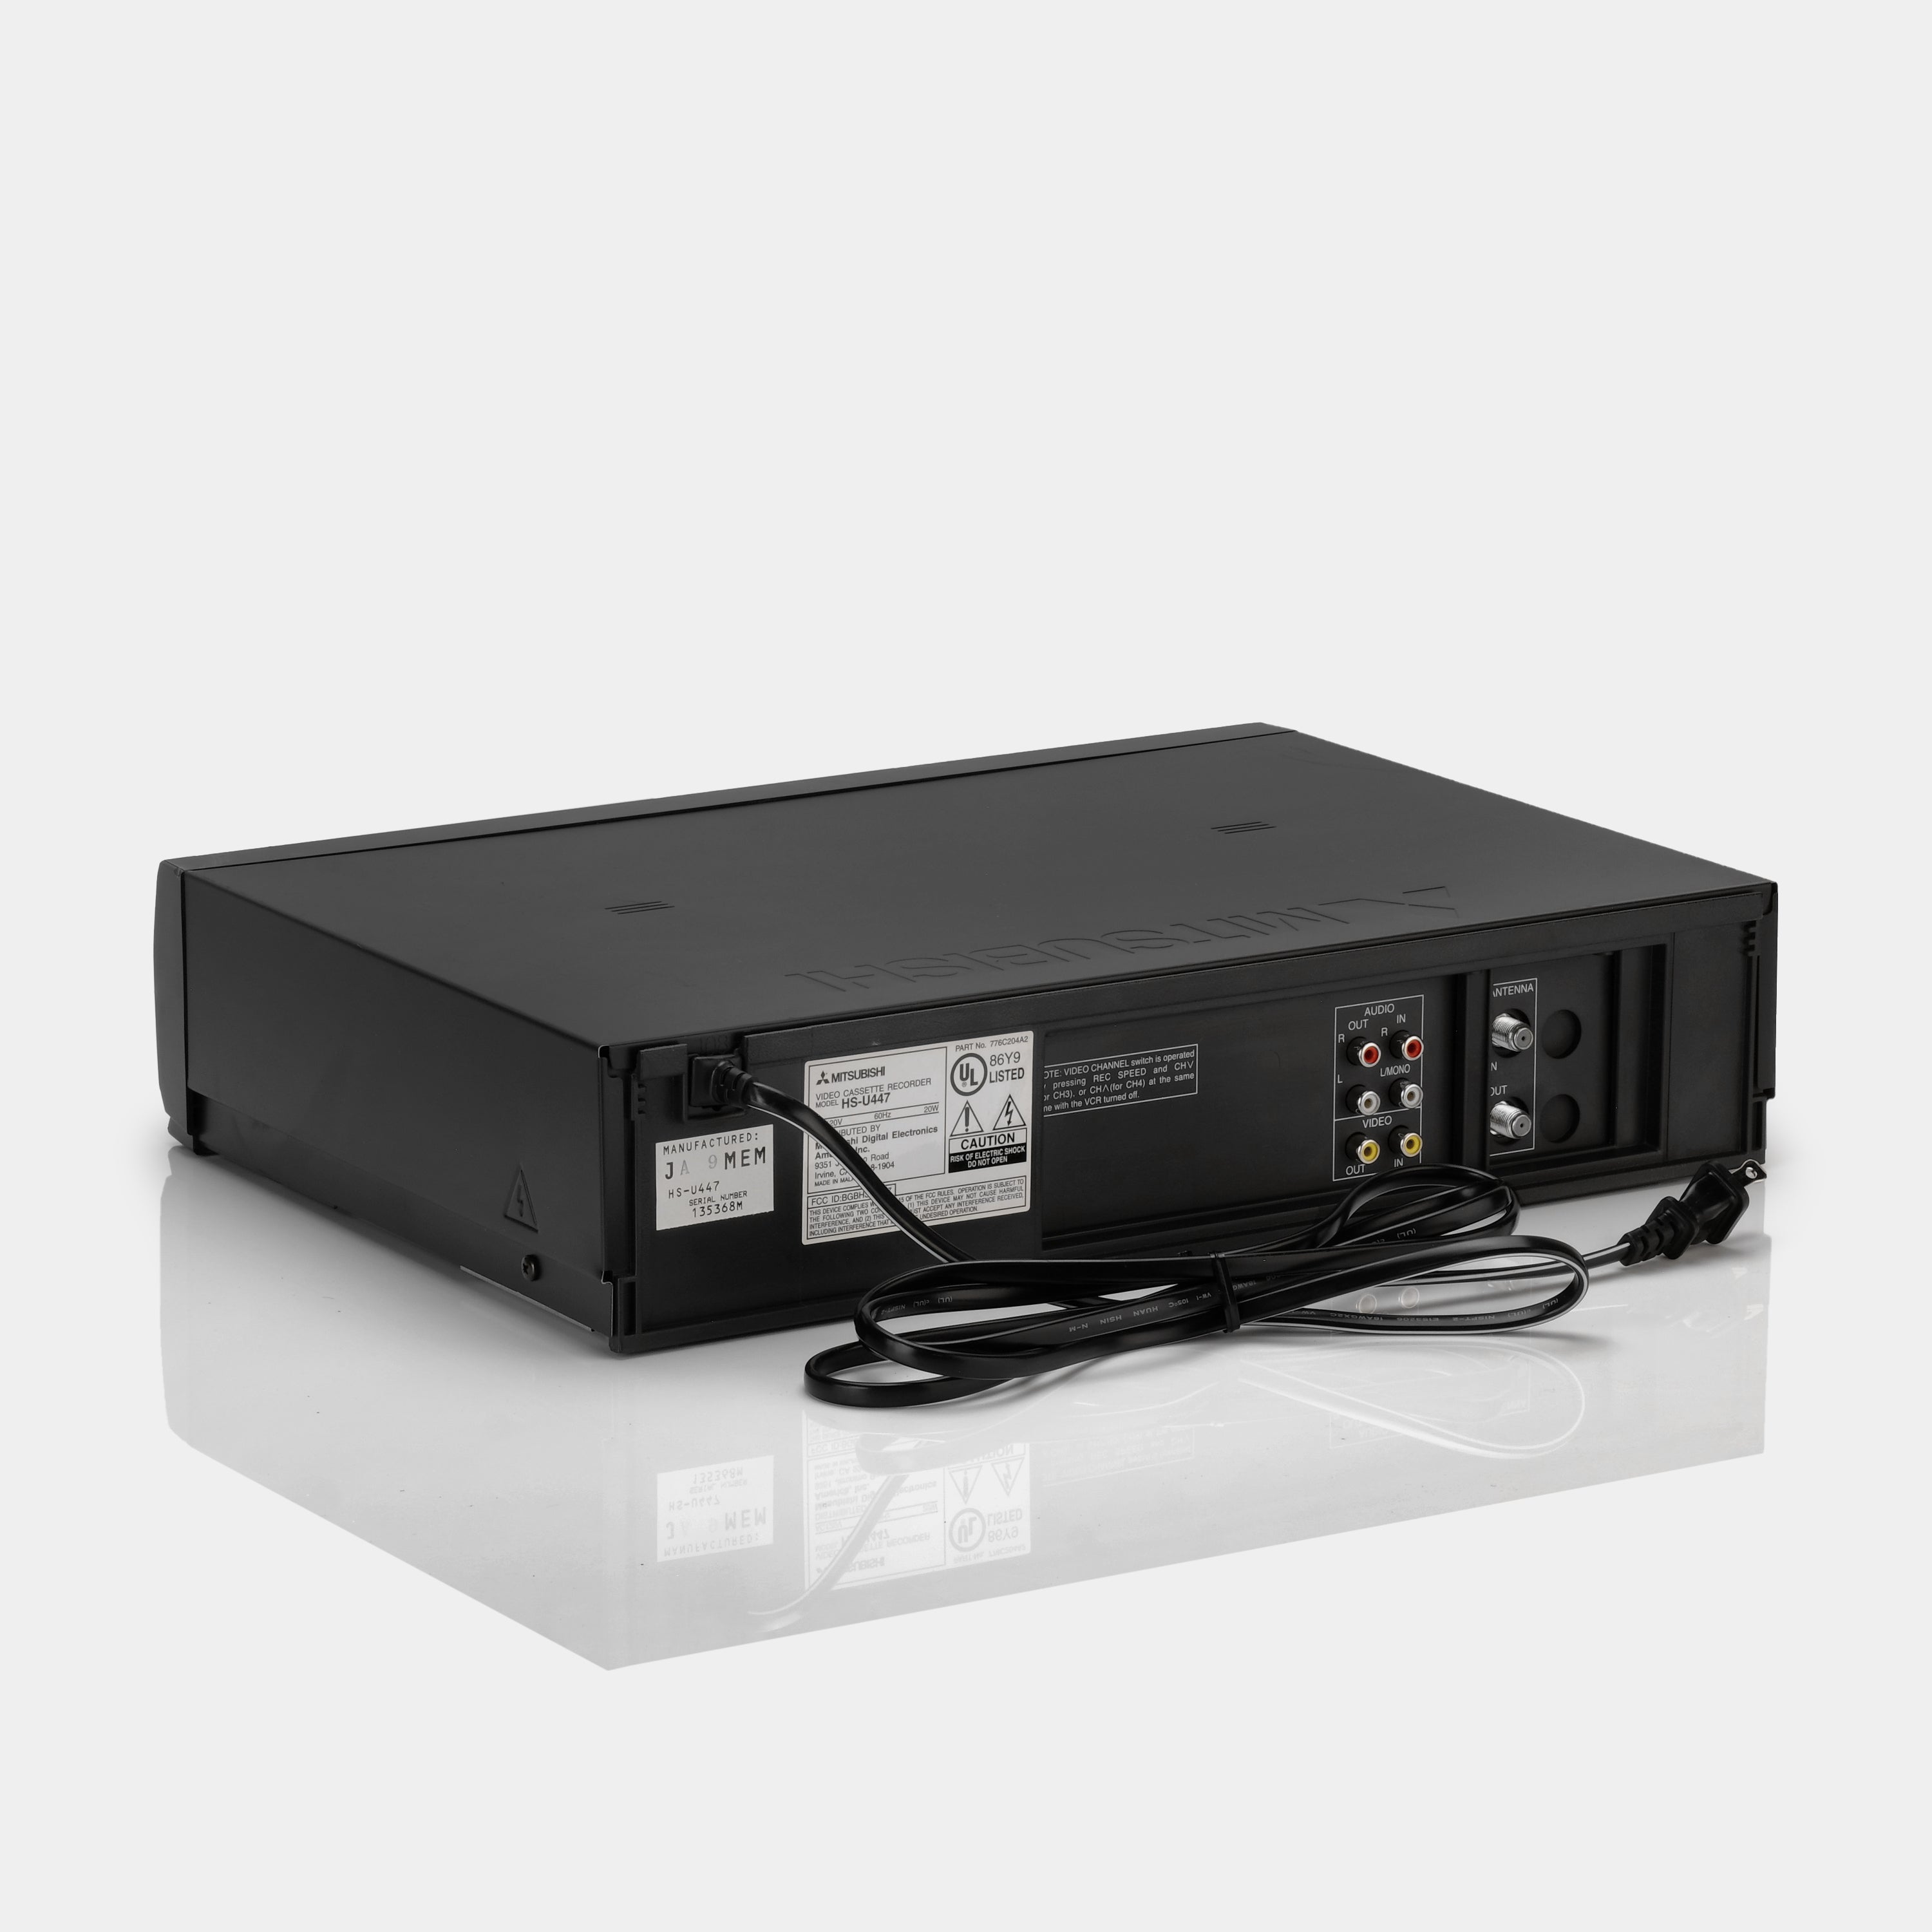 Mitsubishi HS-U447 VCR VHS Player